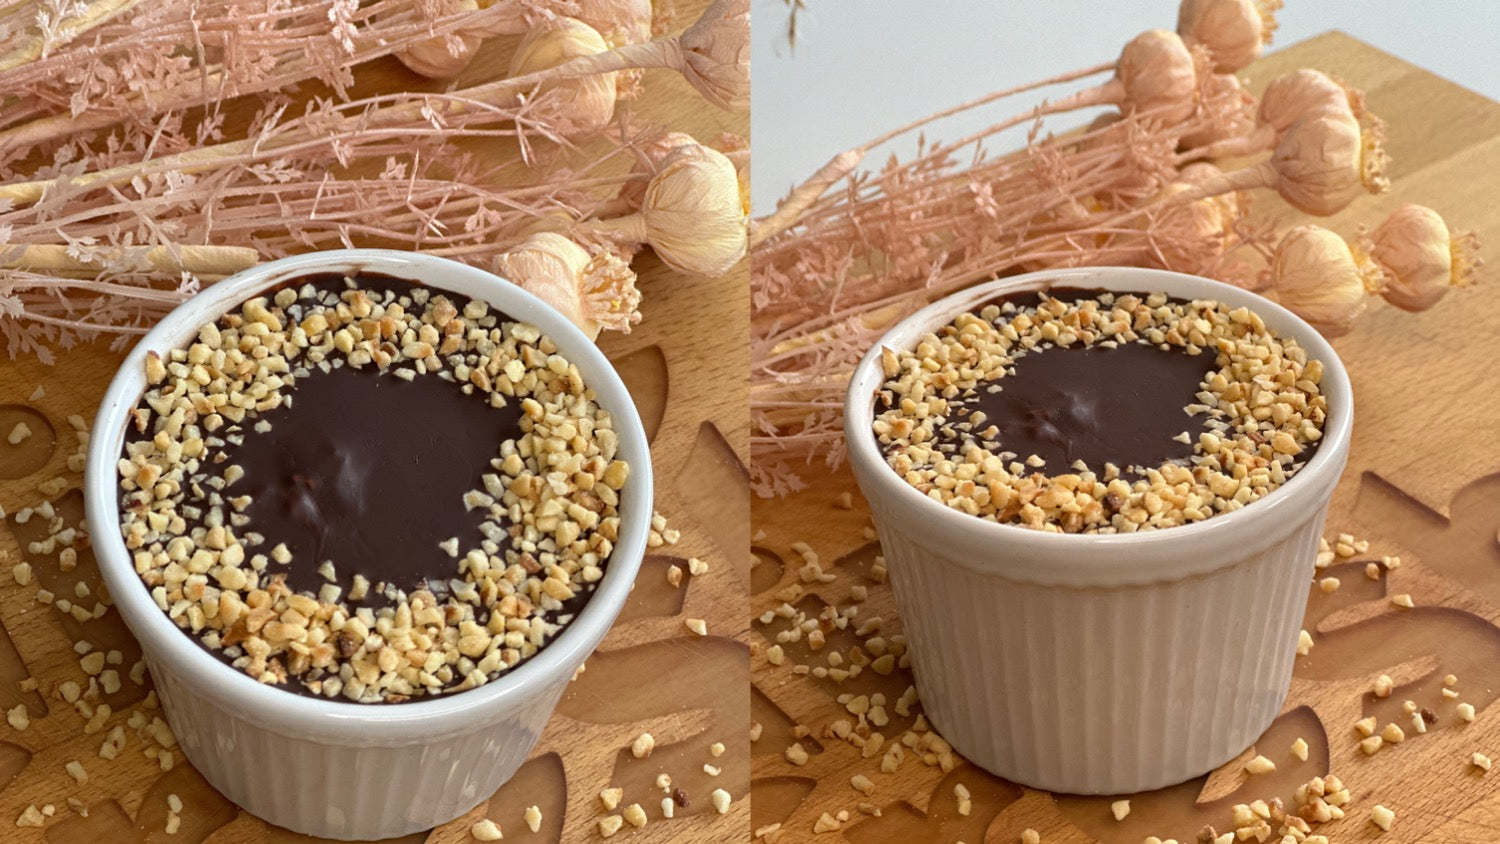 Zwei Aufnahmen von Ferrero Rocher Desserts in weißen Ramekins, garniert mit Schokoladenglasur und gehackten Nüssen auf einem Holzuntergrund, ideal für eine süße und nussige Nachspeise.